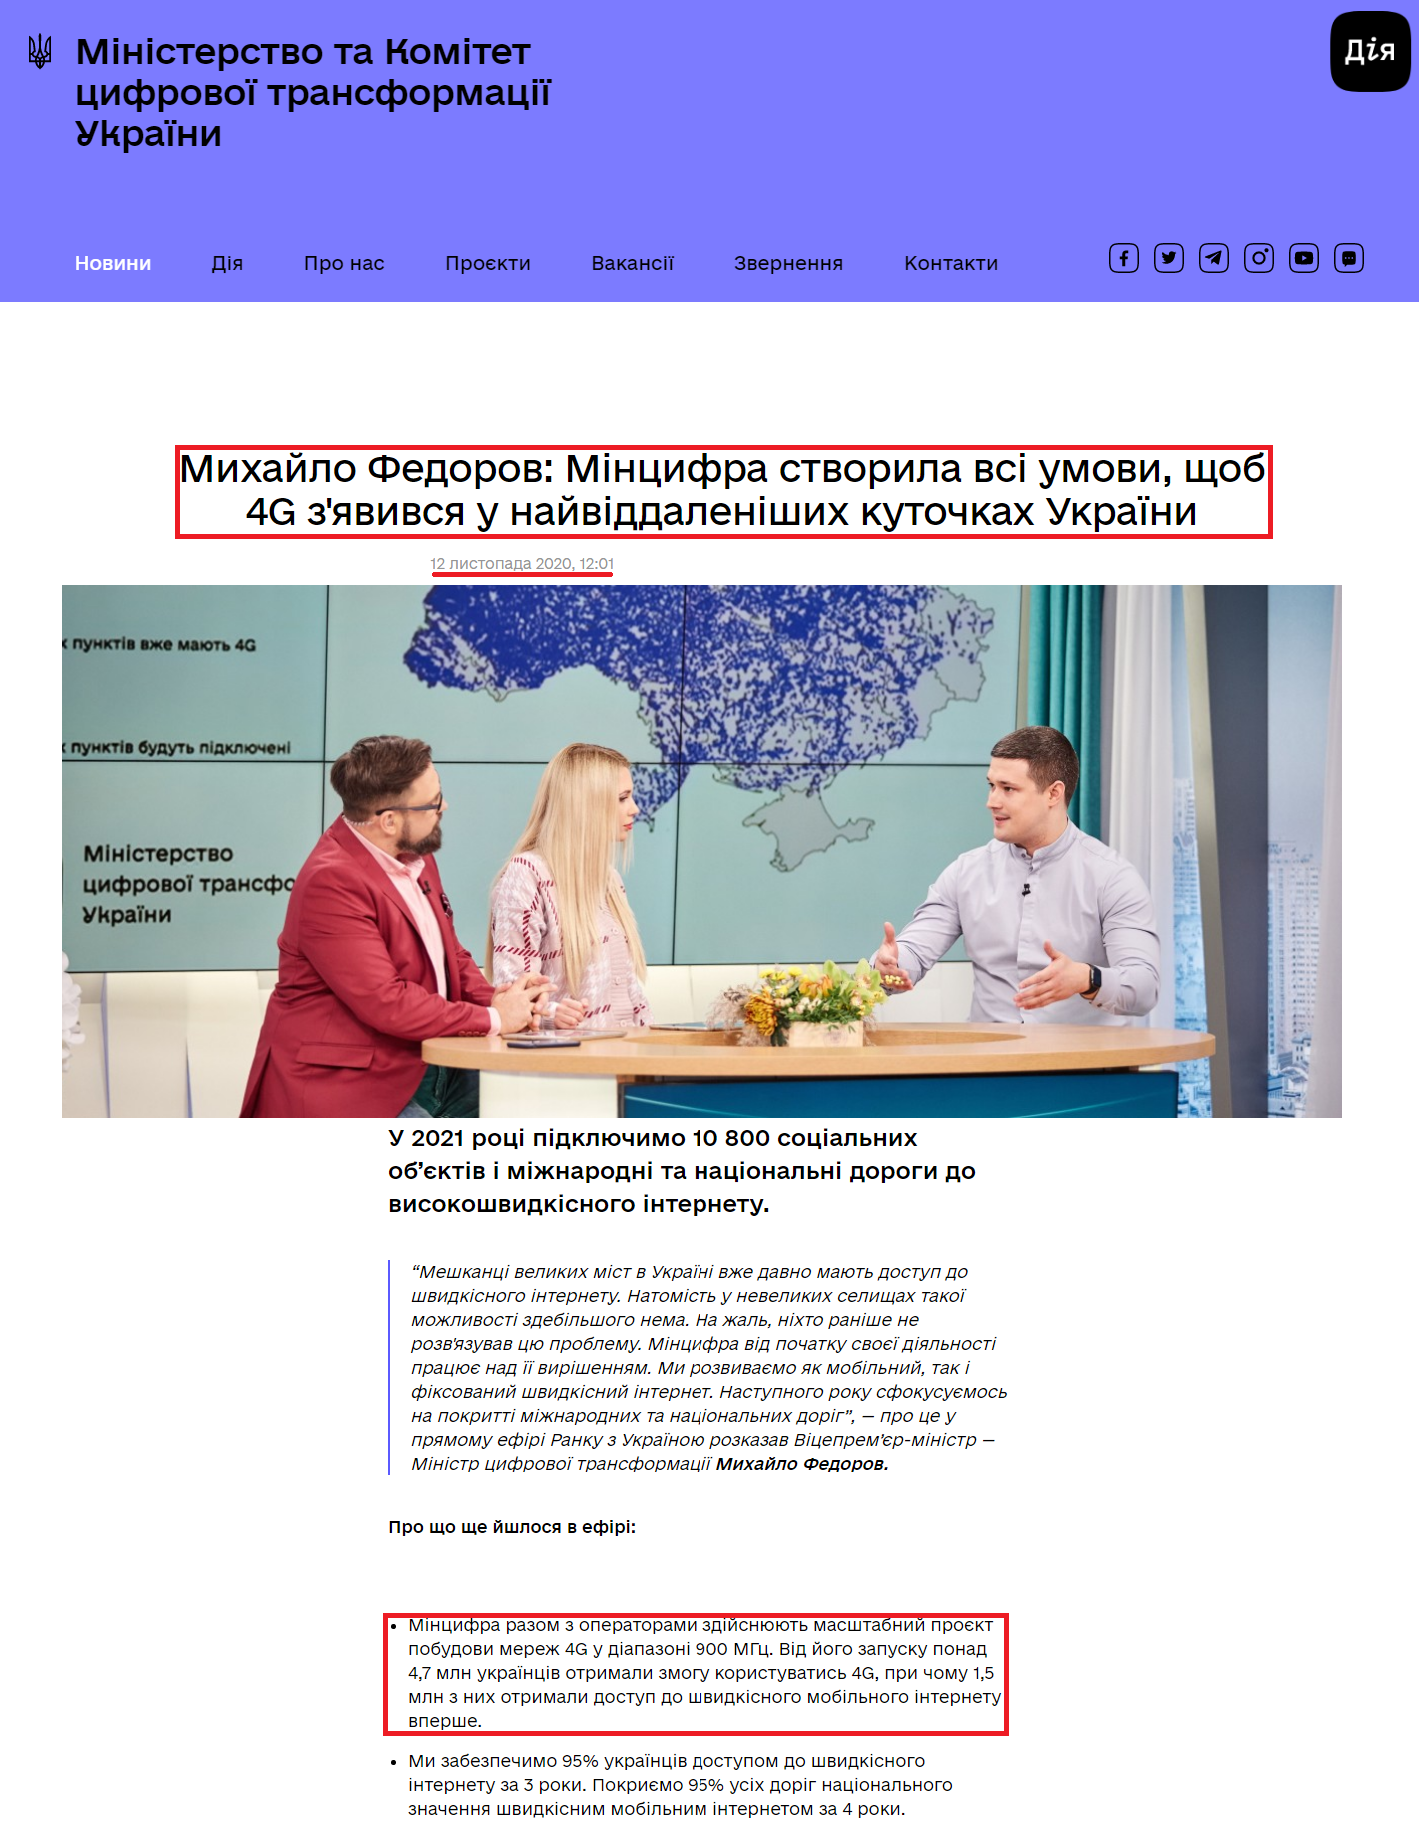 https://thedigital.gov.ua/news/mikhaylo-fedorov-mintsifra-stvorila-vsi-umovi-shchob-4g-zyavivsya-u-nayviddalenishikh-kutochkakh-ukraini